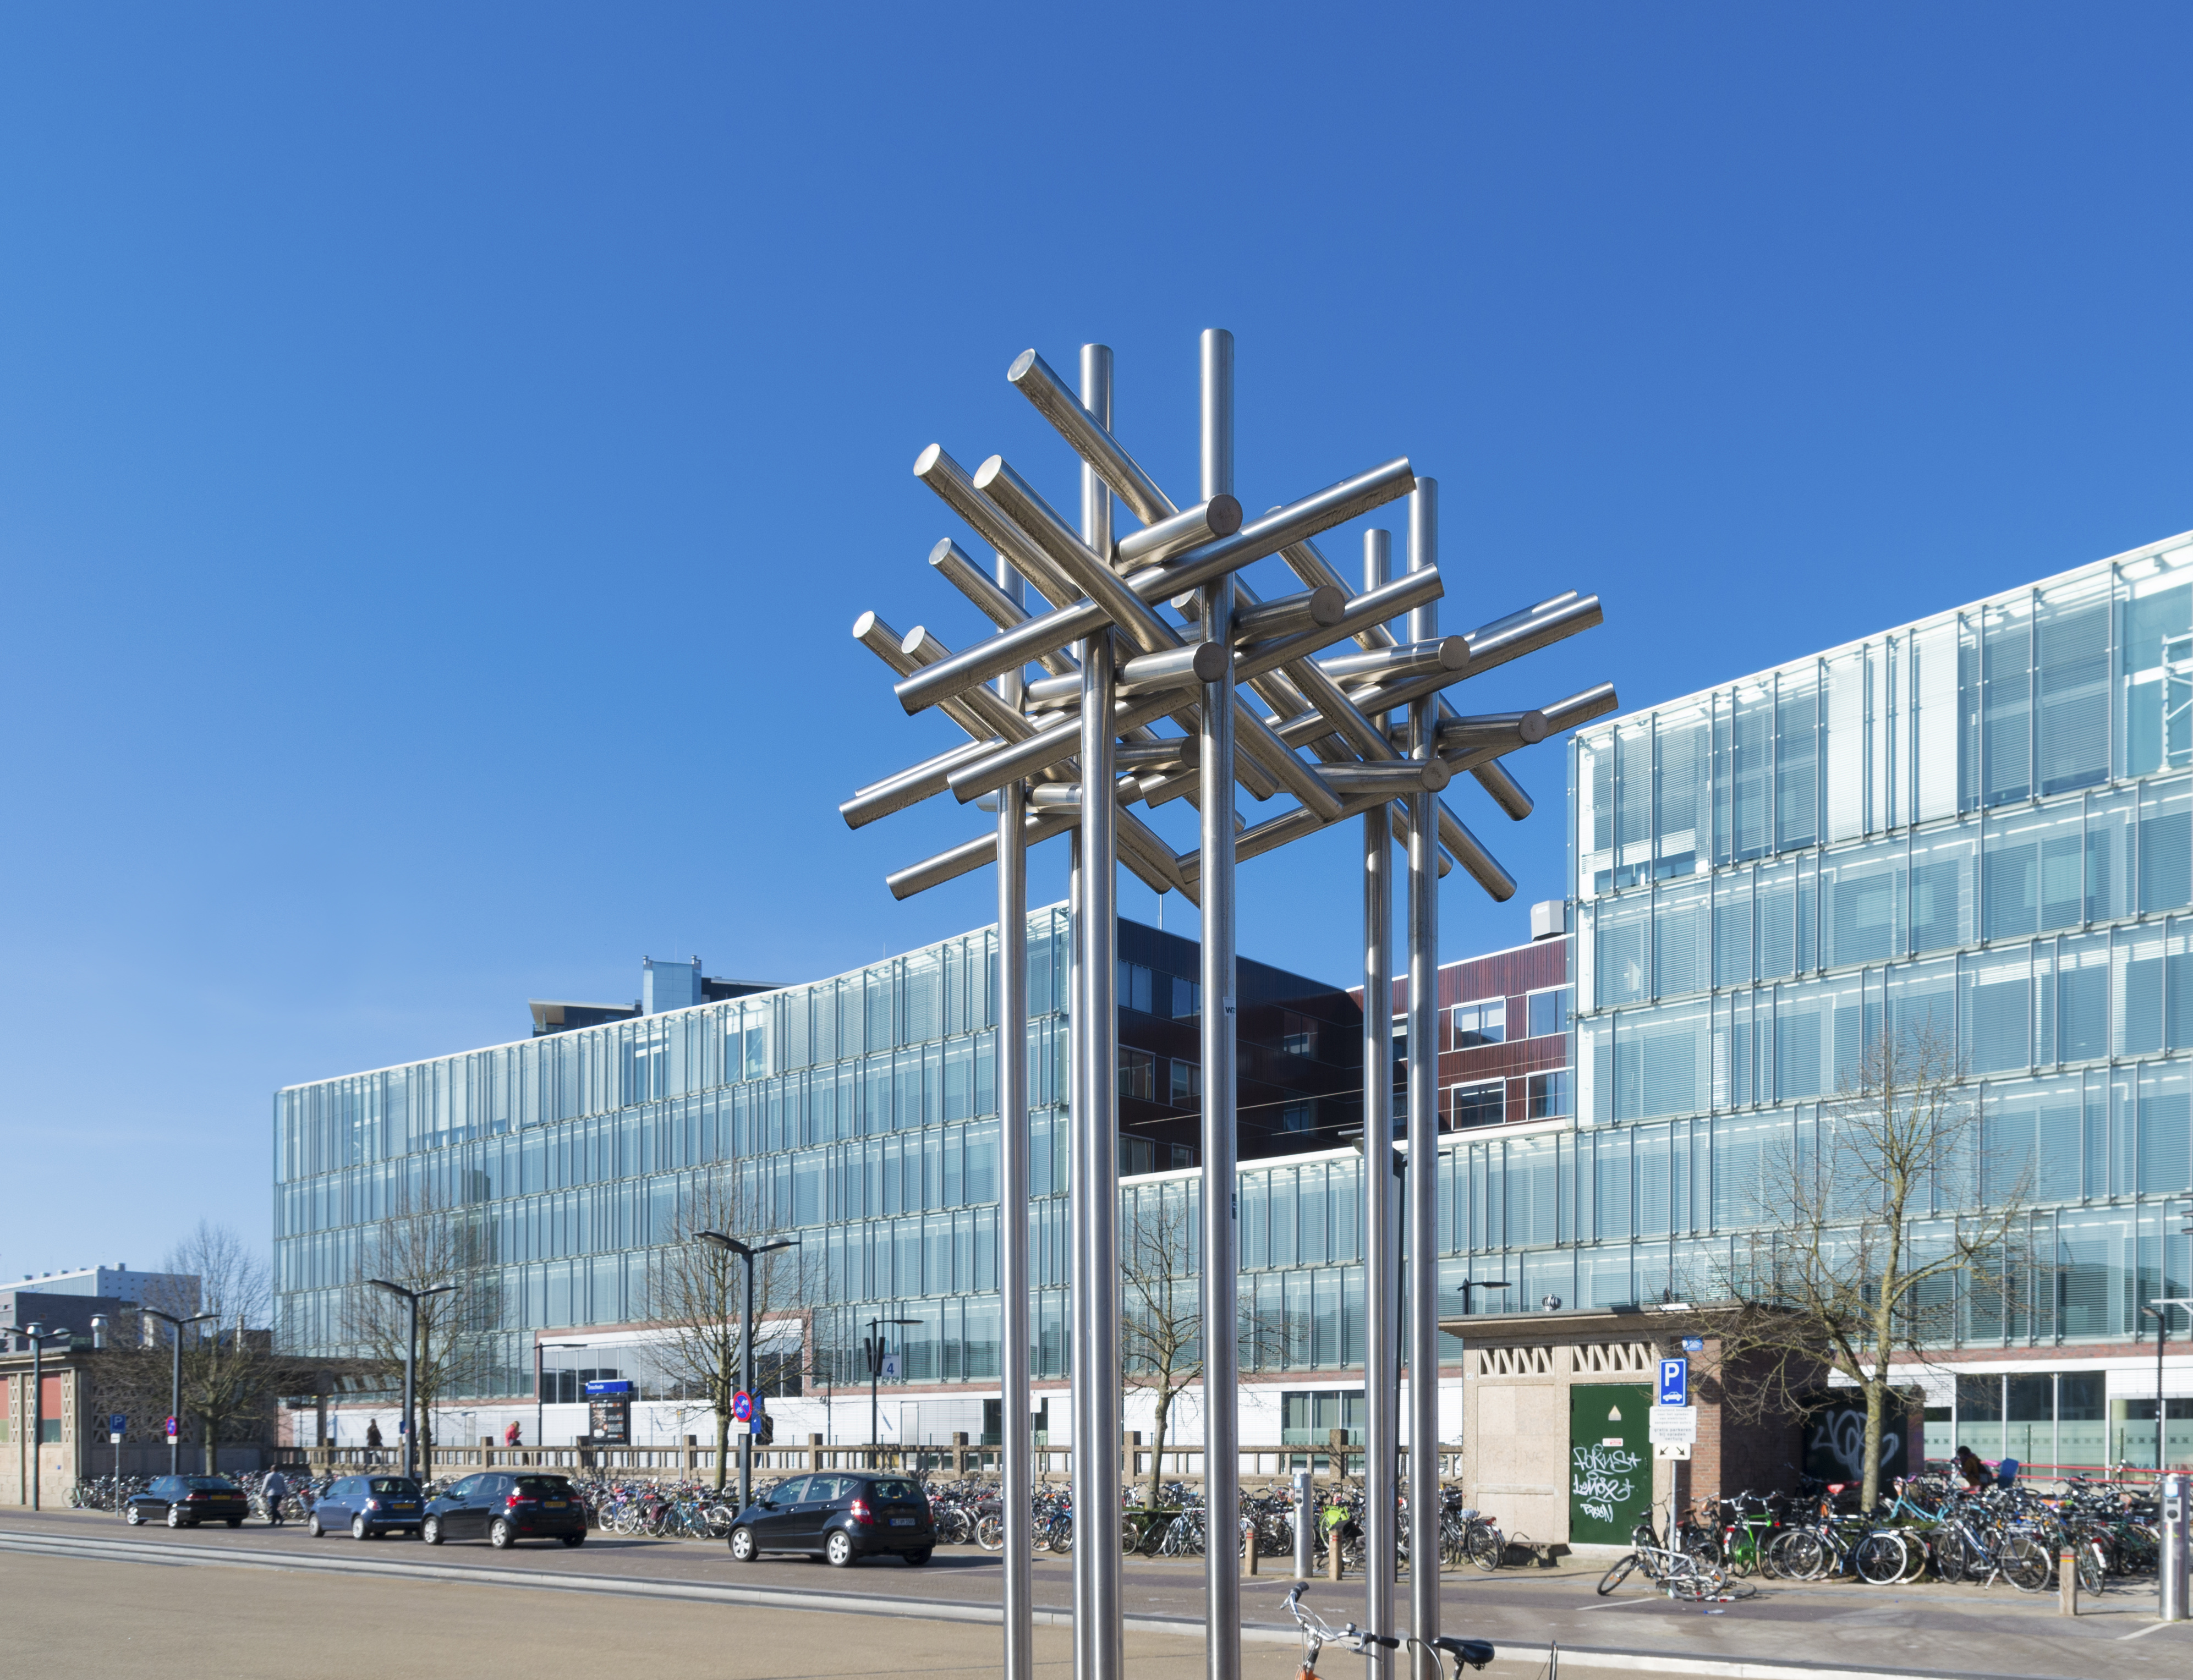 Enschede Rijkmuseum mit moderner Skulptur vor